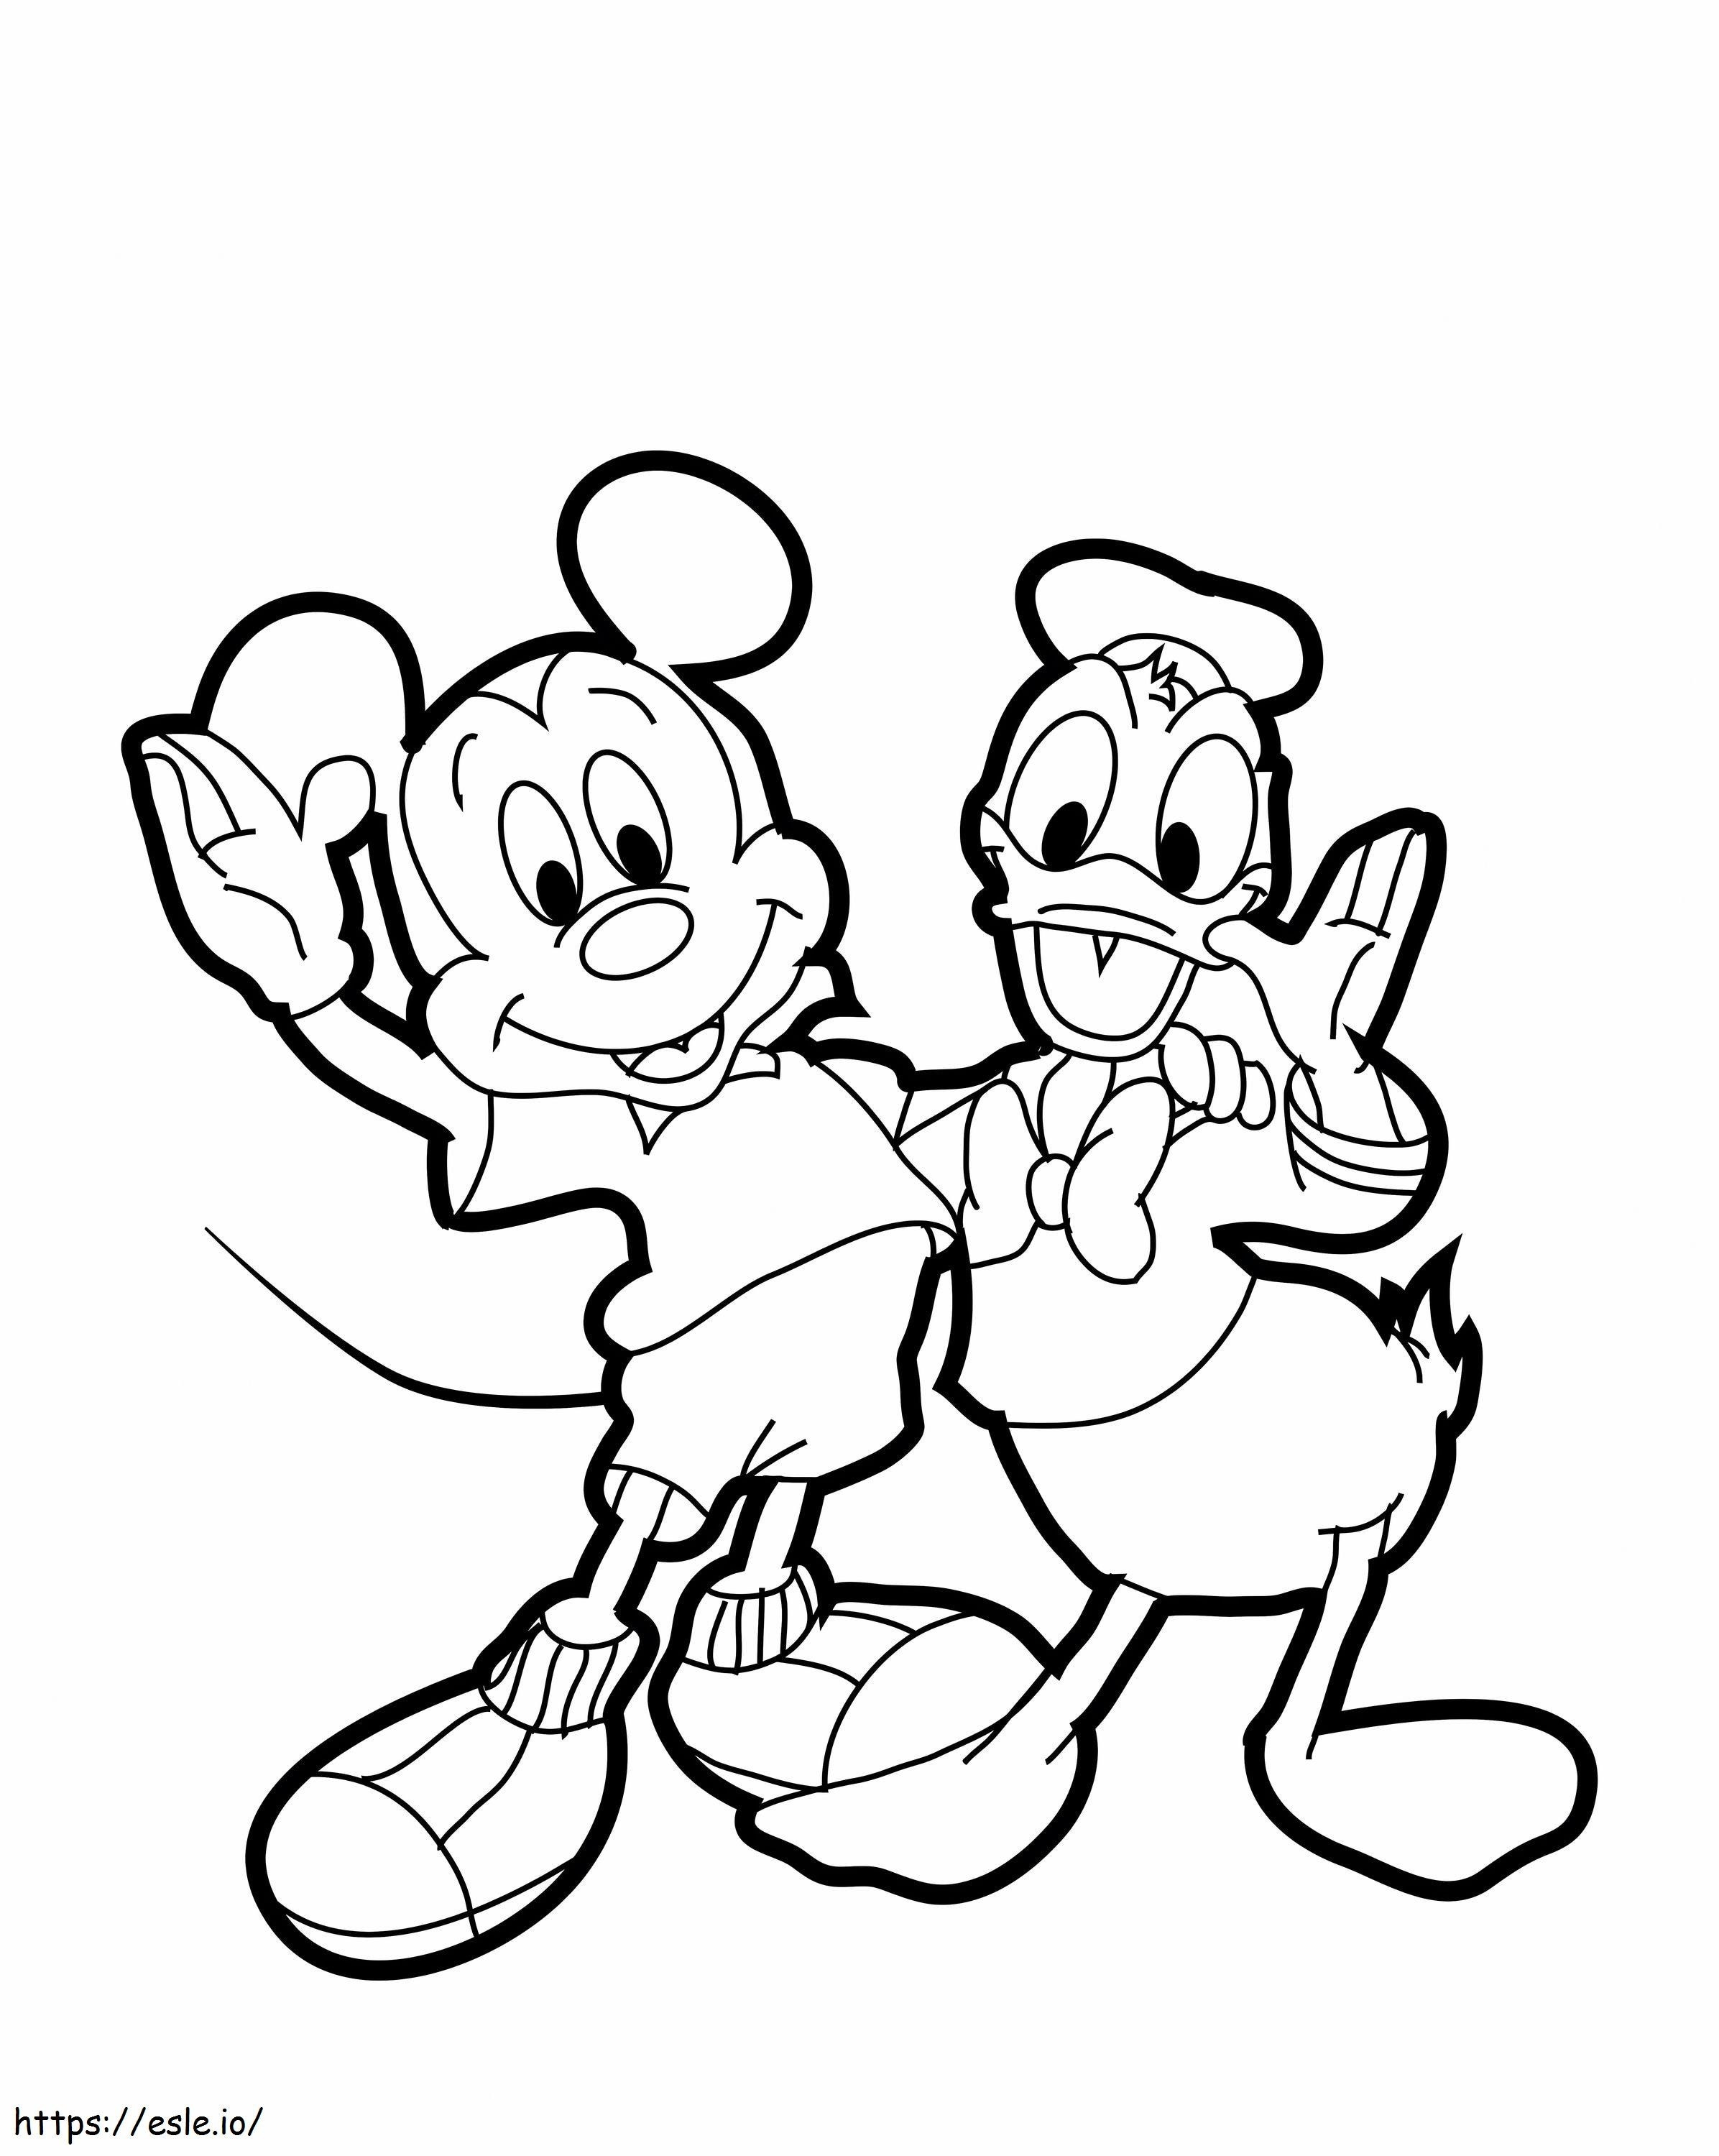 1539922258 Pato Donald Dibujado Mickey Mouse 530605 6841460 para colorear